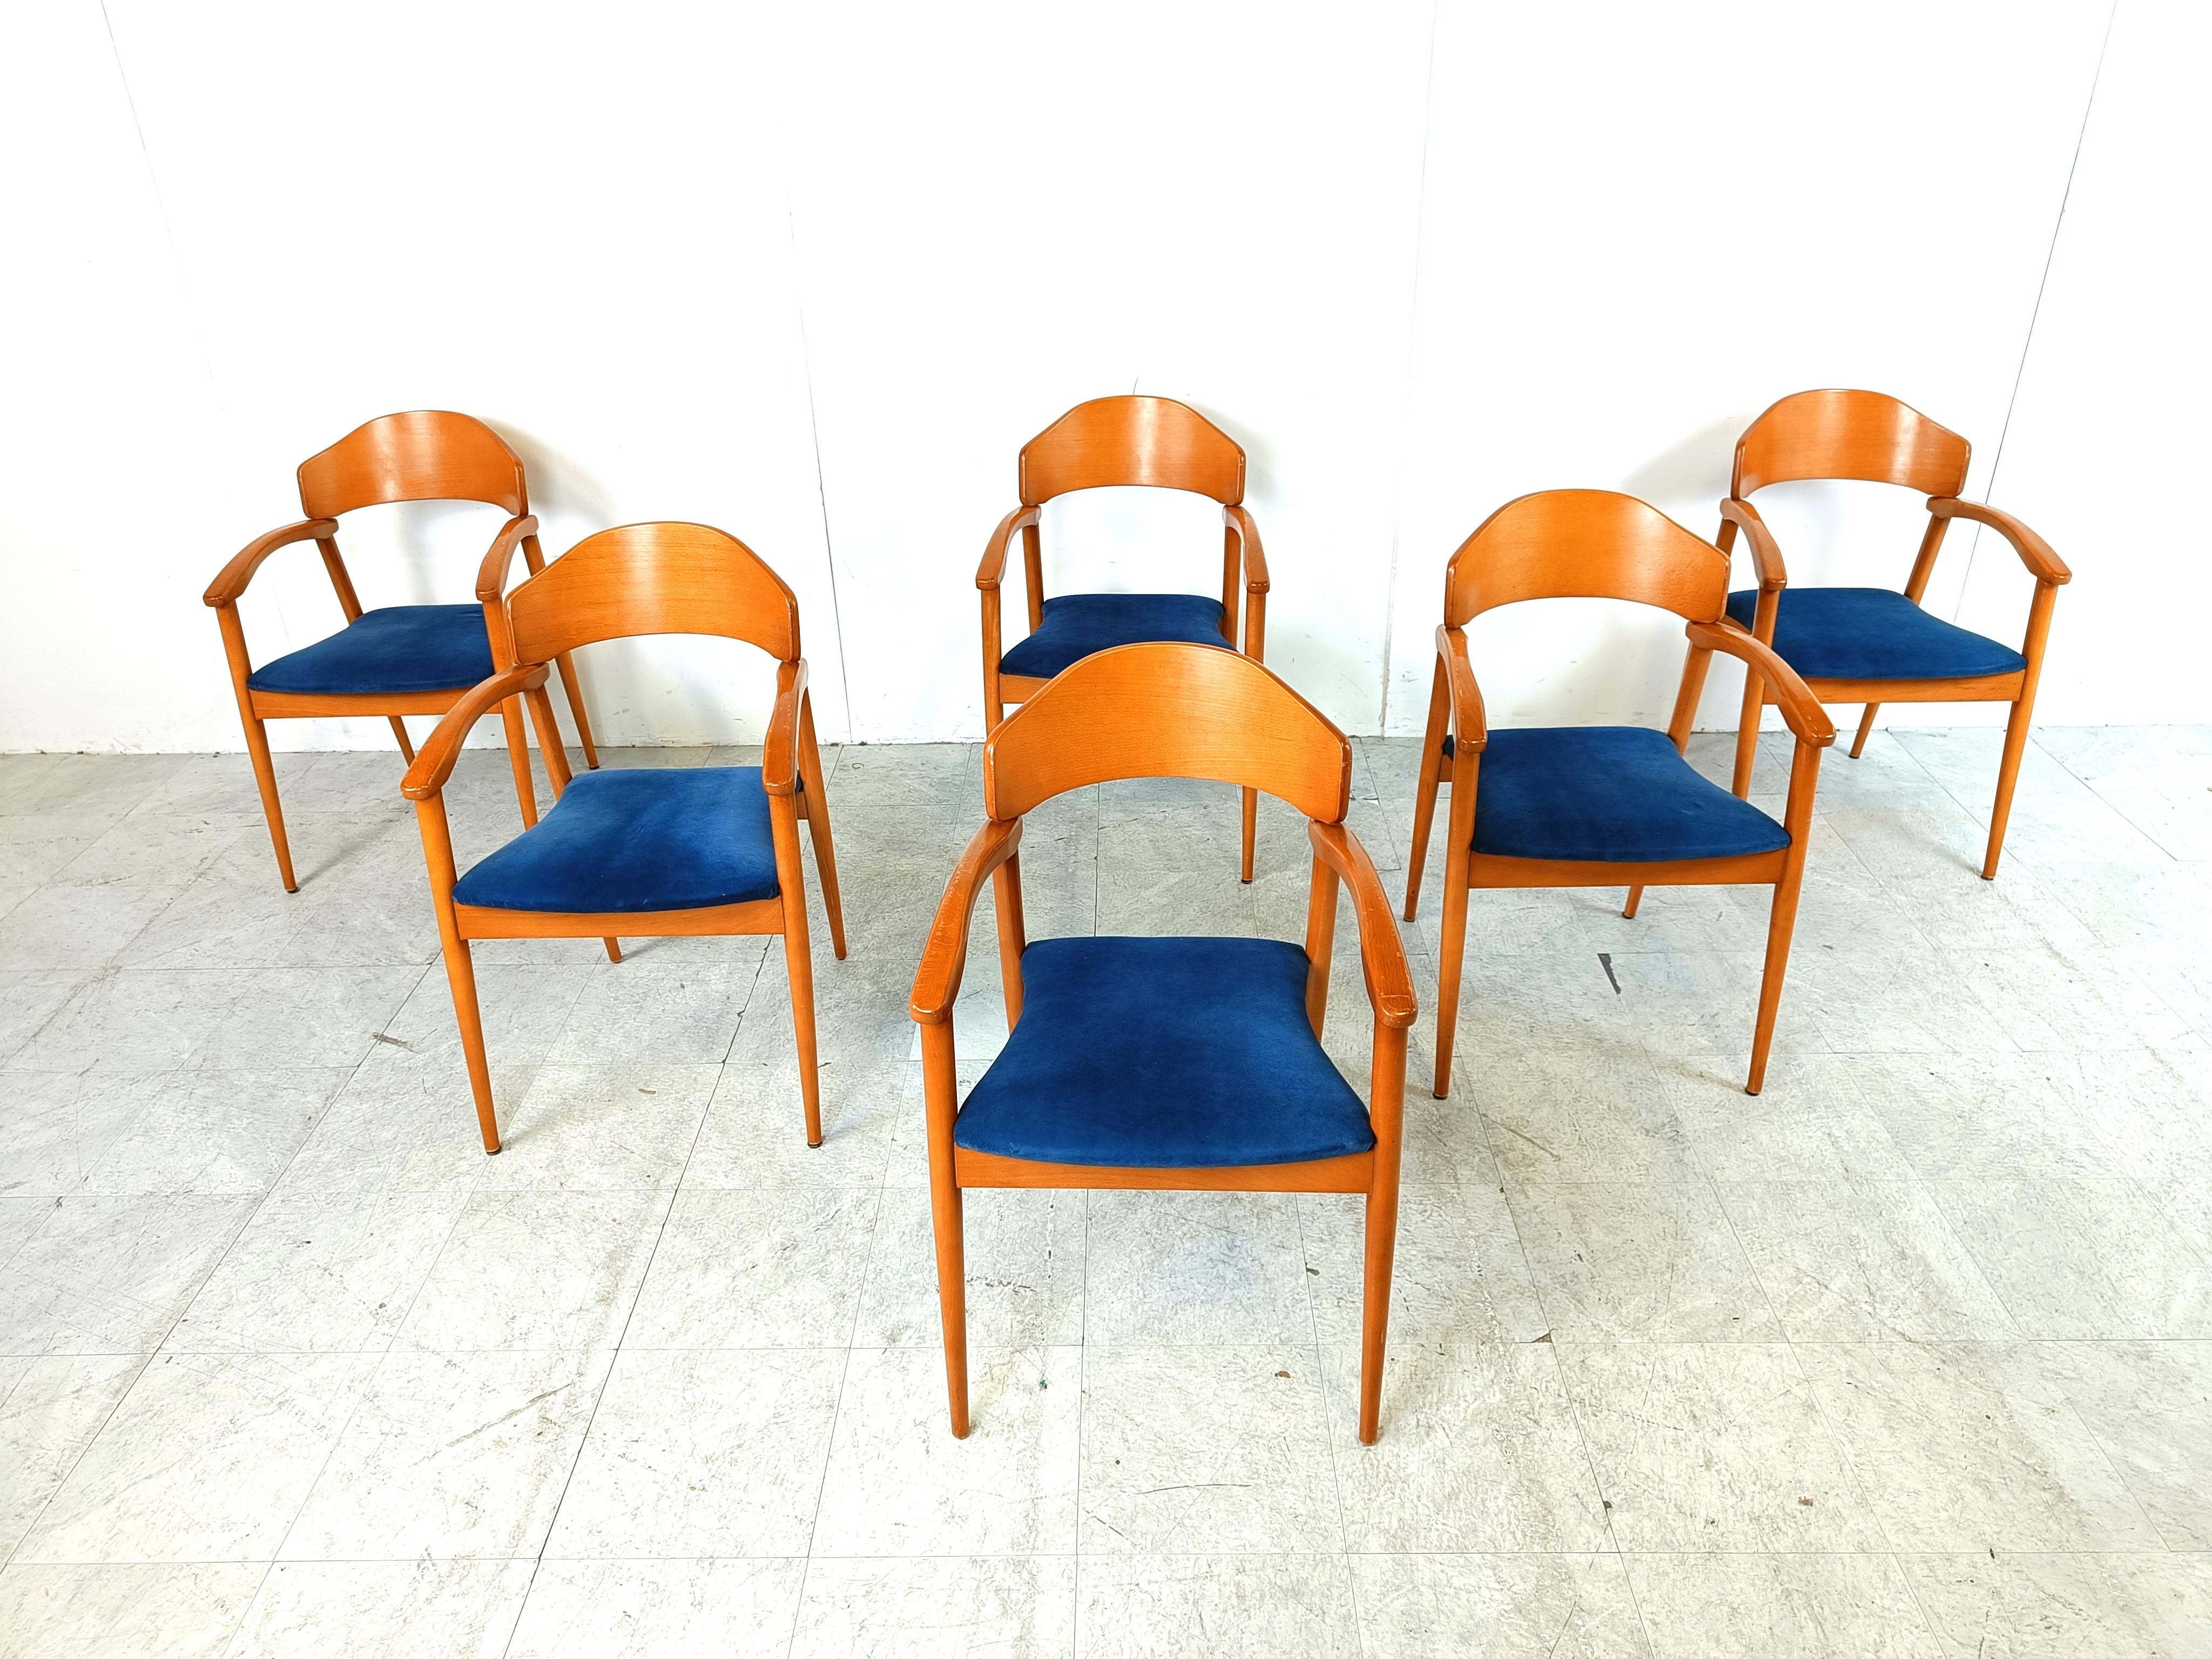 Chaises de salle à manger vintage en bois avec assise en velours bleu.

Conçus et fabriqués en Espagne, ces fauteuils, chaises de salle à manger ou chaises de conférence intemporels sont très bien conçus avec du bois courbé beauitufl et sont très